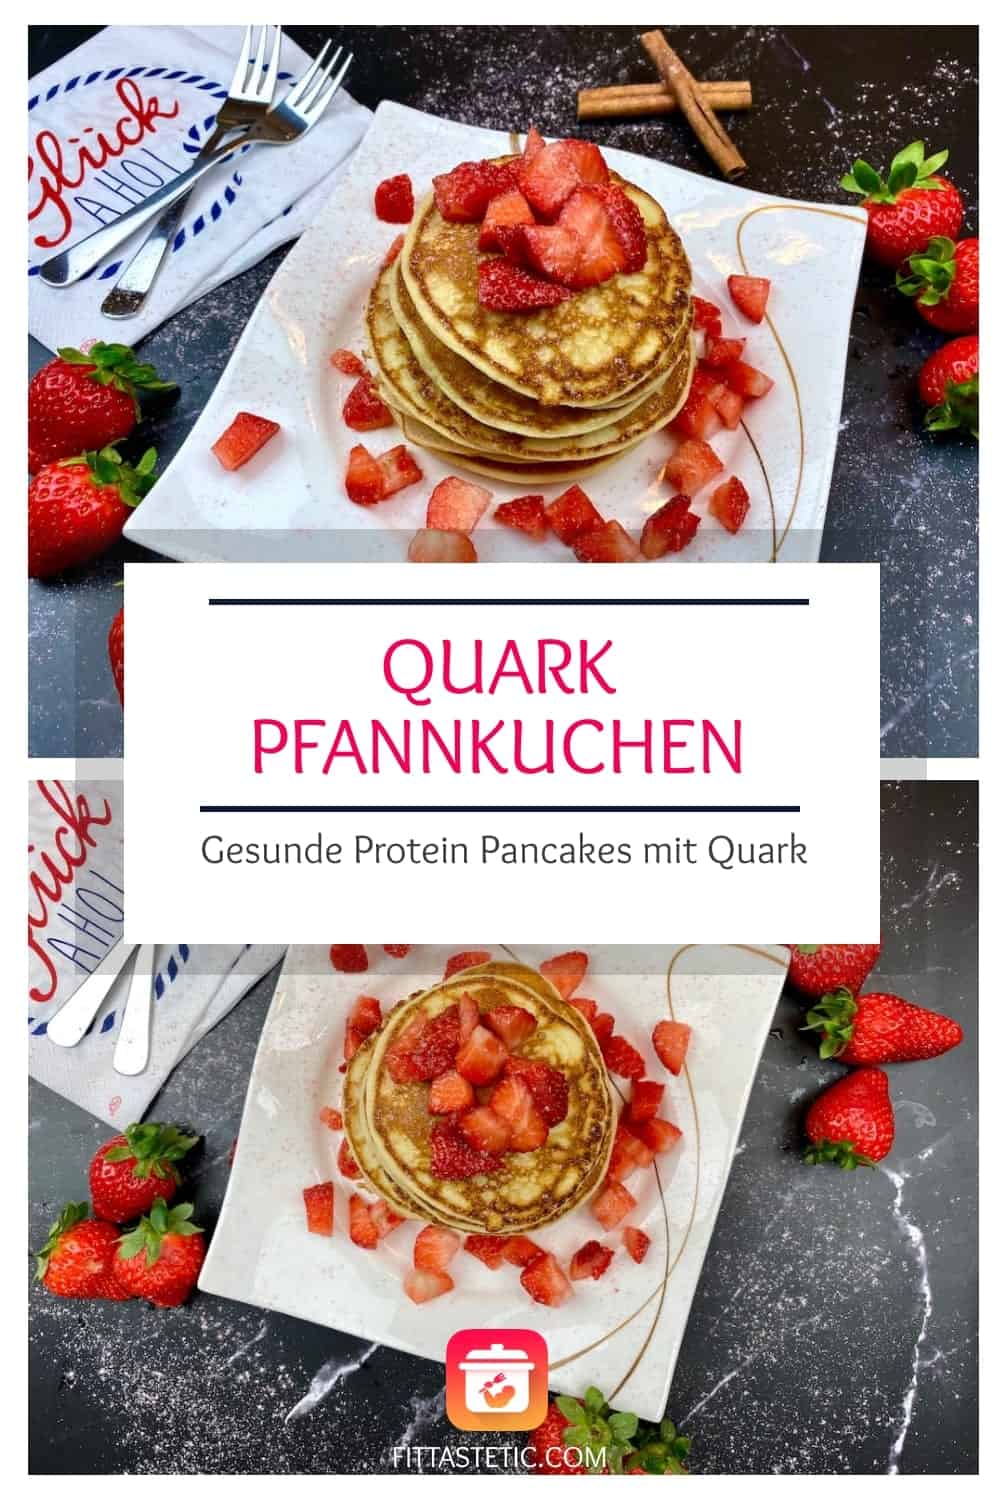 Quark Pfannkuchen - Gesunde Protein Pancakes #1 mit Quark